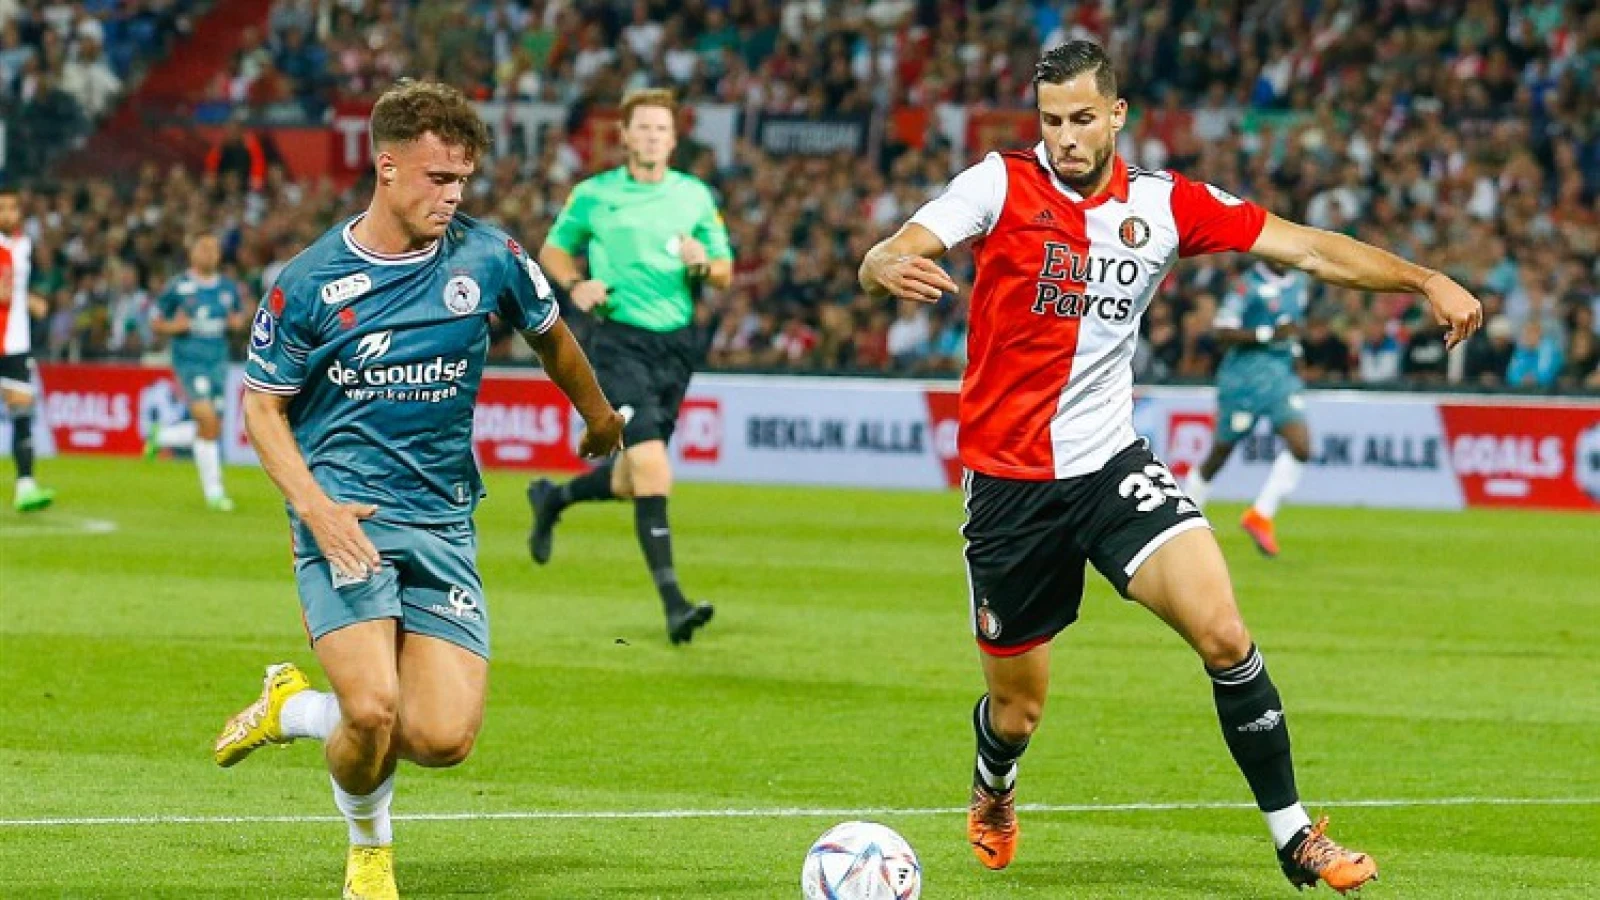 Gaat Feyenoord de drie punten meenemen uit Nijmegen zonder doelpunt tegen te krijgen?